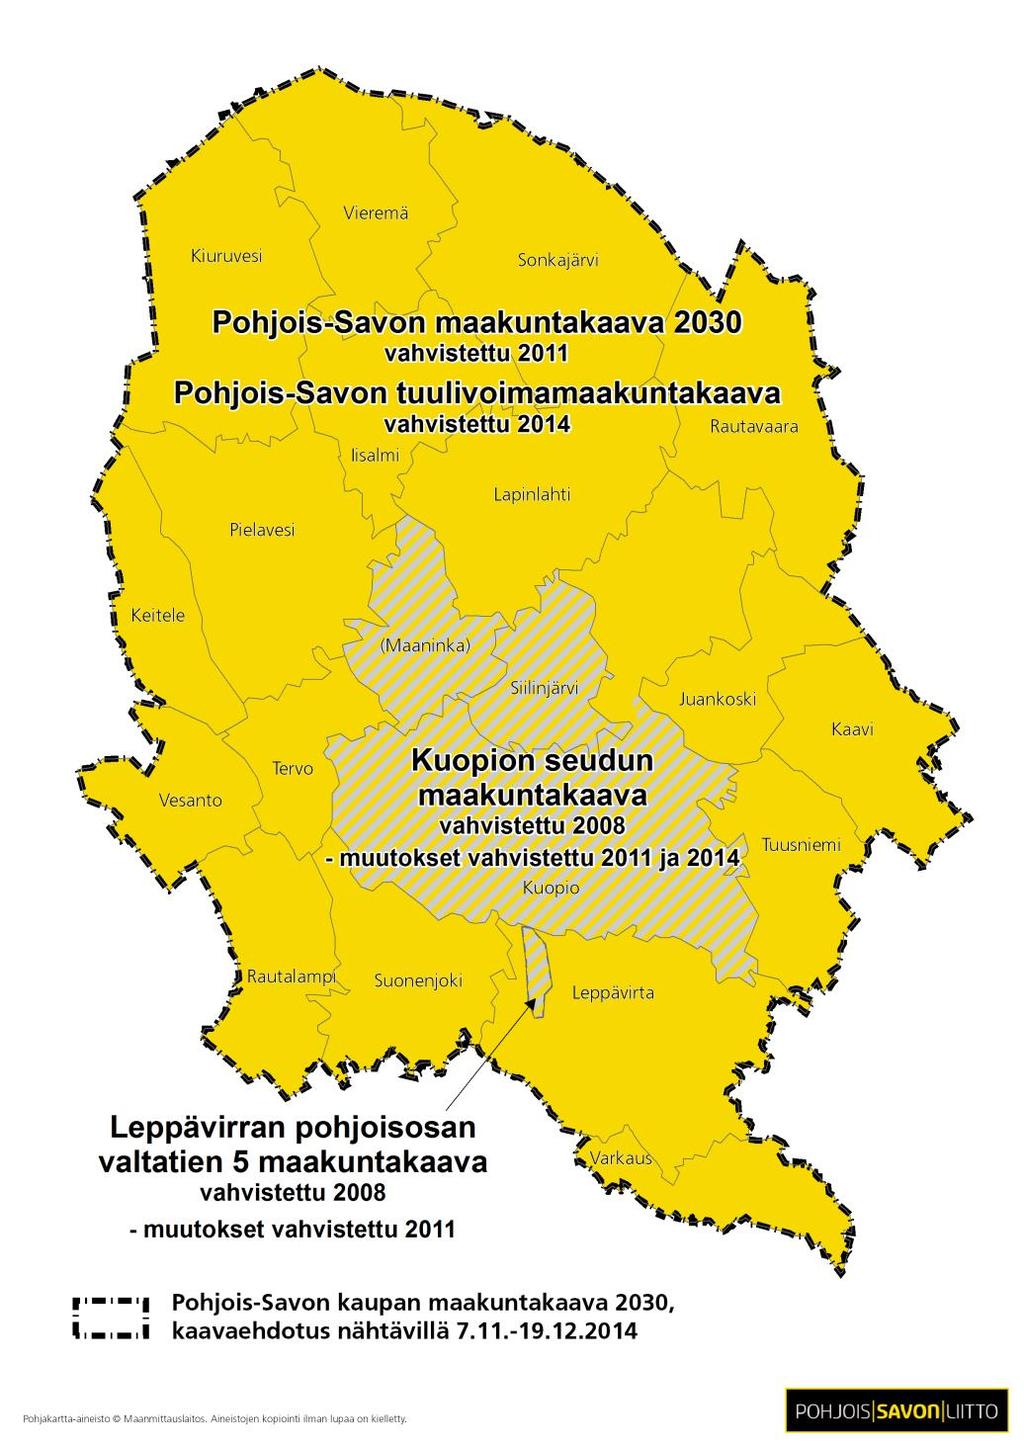 Maakuntakaavoitustilanne Vahvistetut maakuntakaavat Kuopion seudun maakuntakaava Vahvistettu 2008 Leppävirran pohjoisosan valtatien 5 maakuntakaava Vahvistettu 2008 Pohjois-Savon maakuntakaava 2030